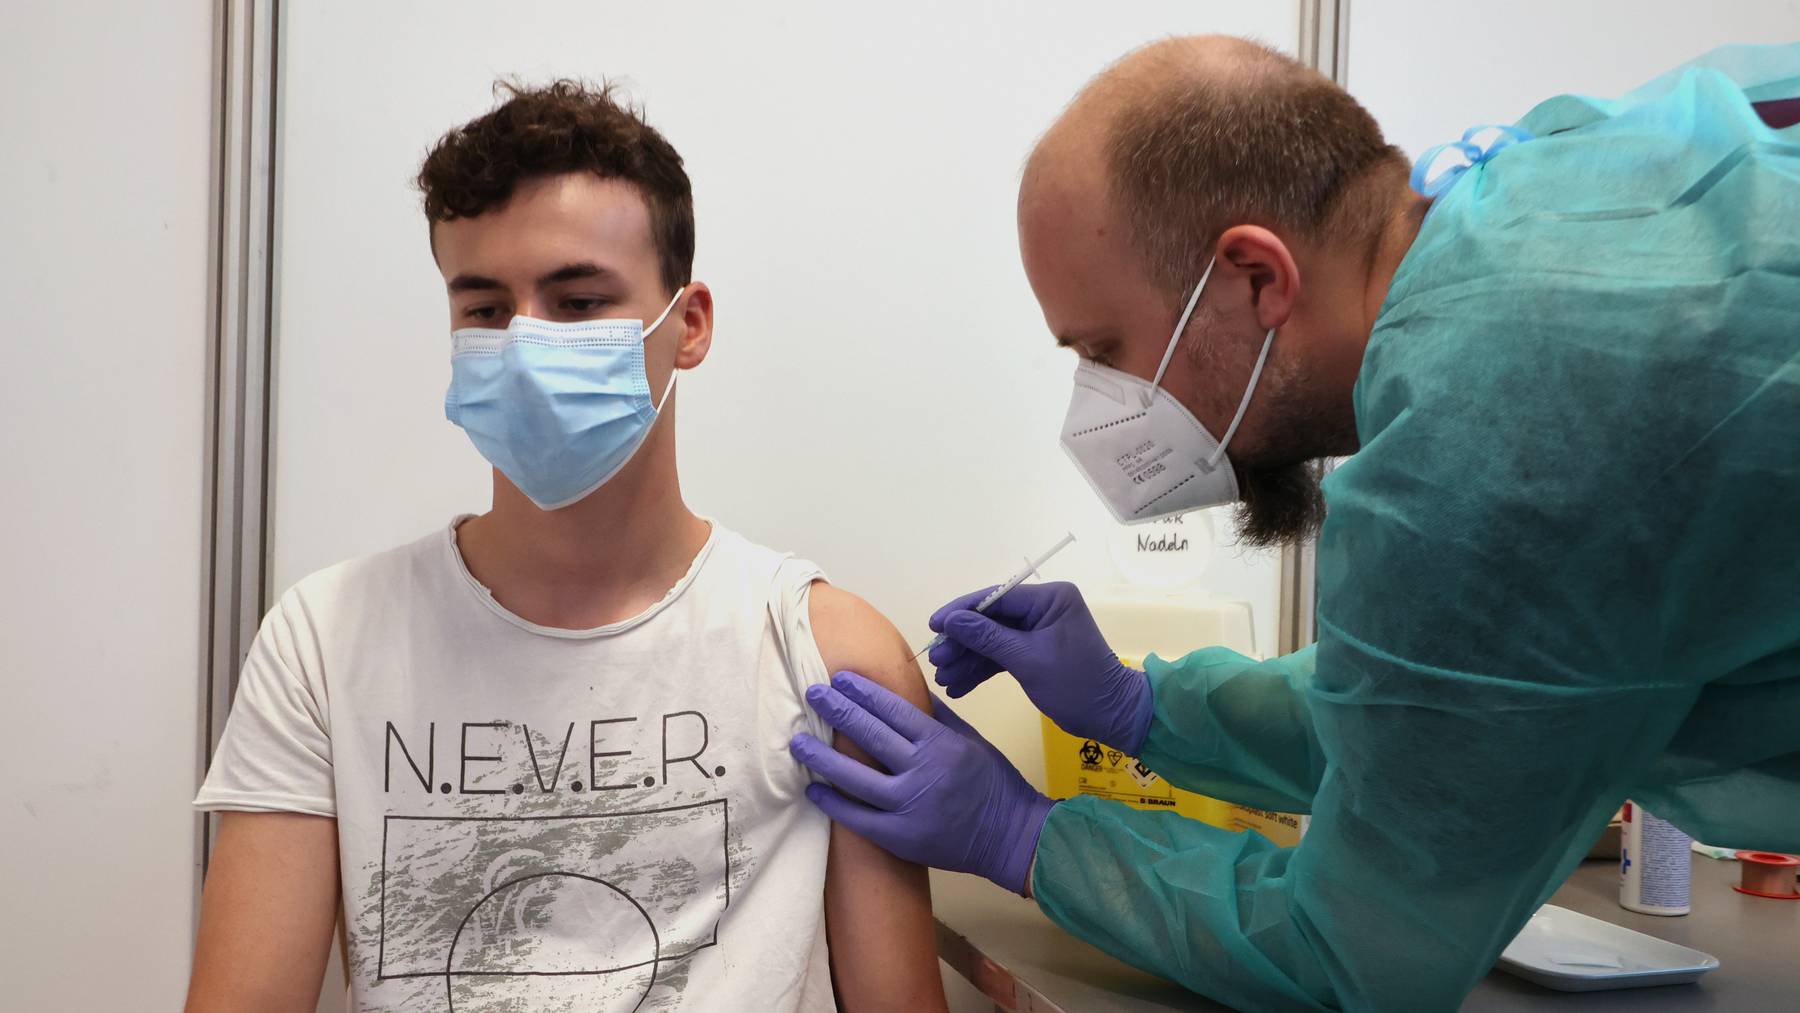 Über 4 Millionen Menschen haben sich in der Schweiz gegen das Coronavirus impfen lassen, weitere 3 Millionen sollen dazukommen.